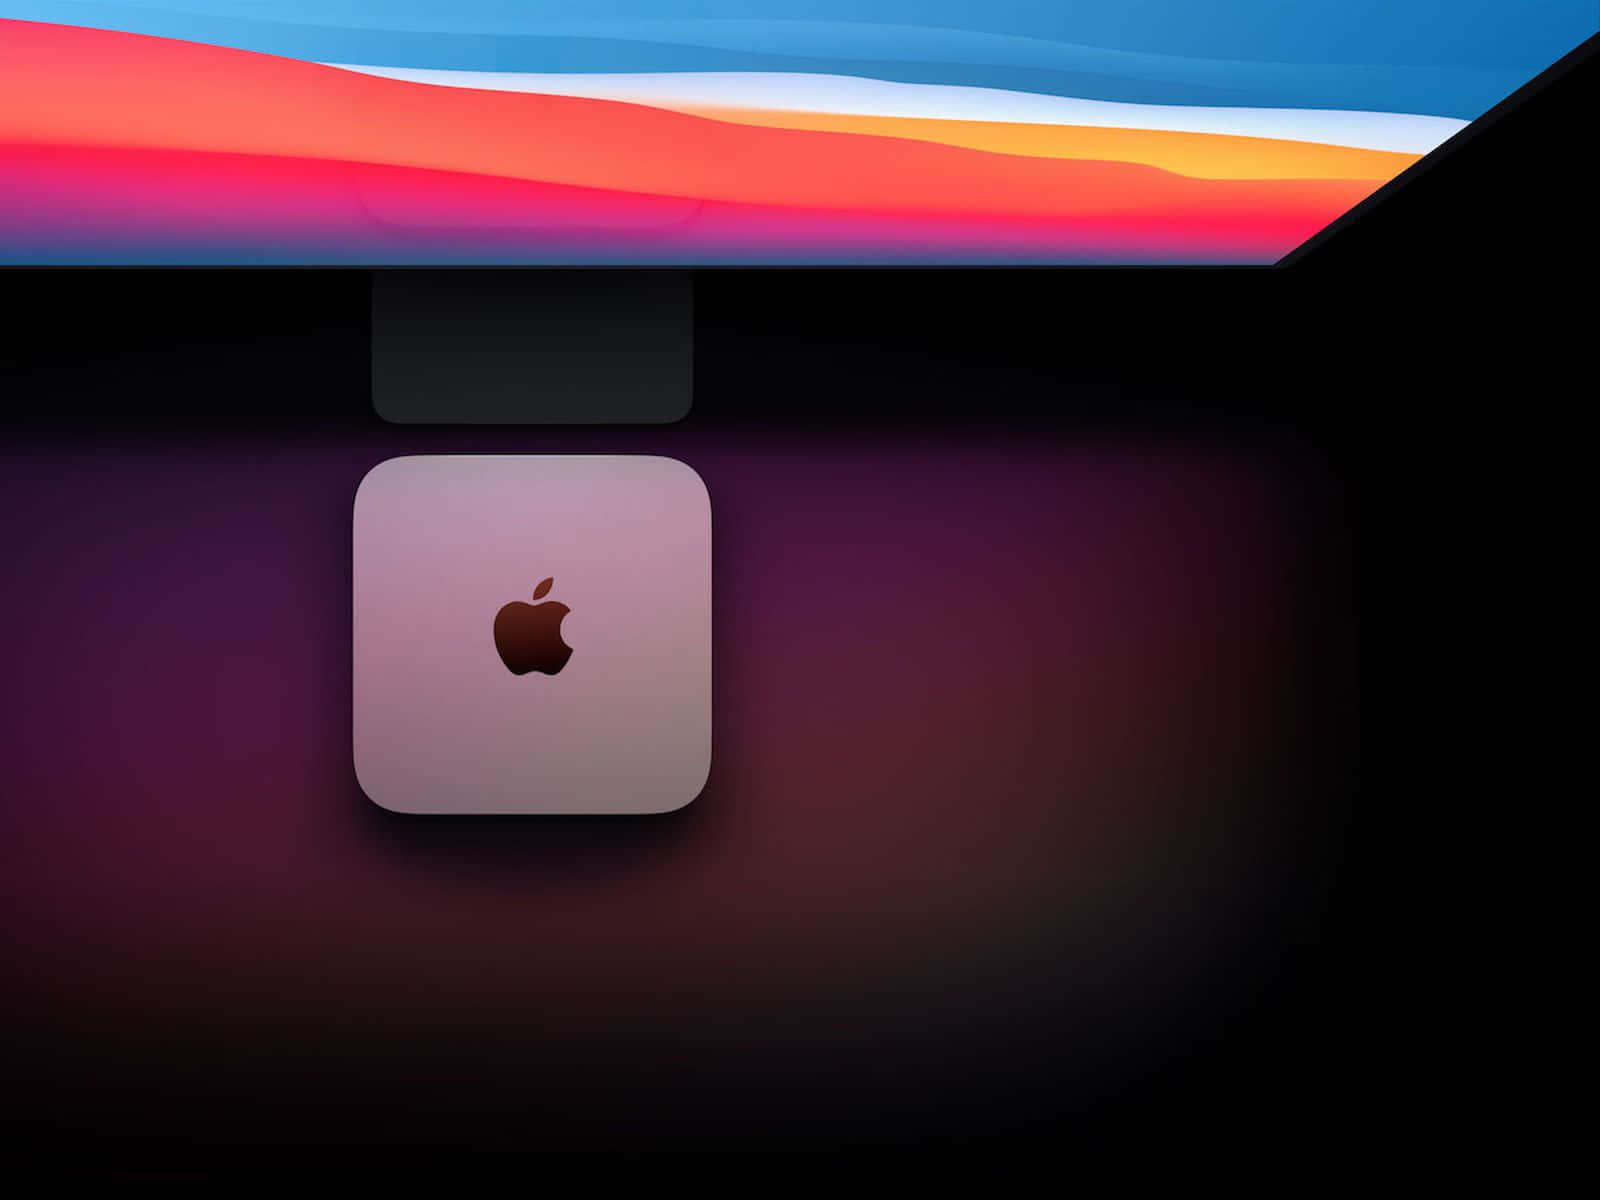 Apple Mac Pro Ipad Pro Ipad Pro Ipad Pro Ipad Pro Ipad Pro Ipad Pro Ipad Pro Background